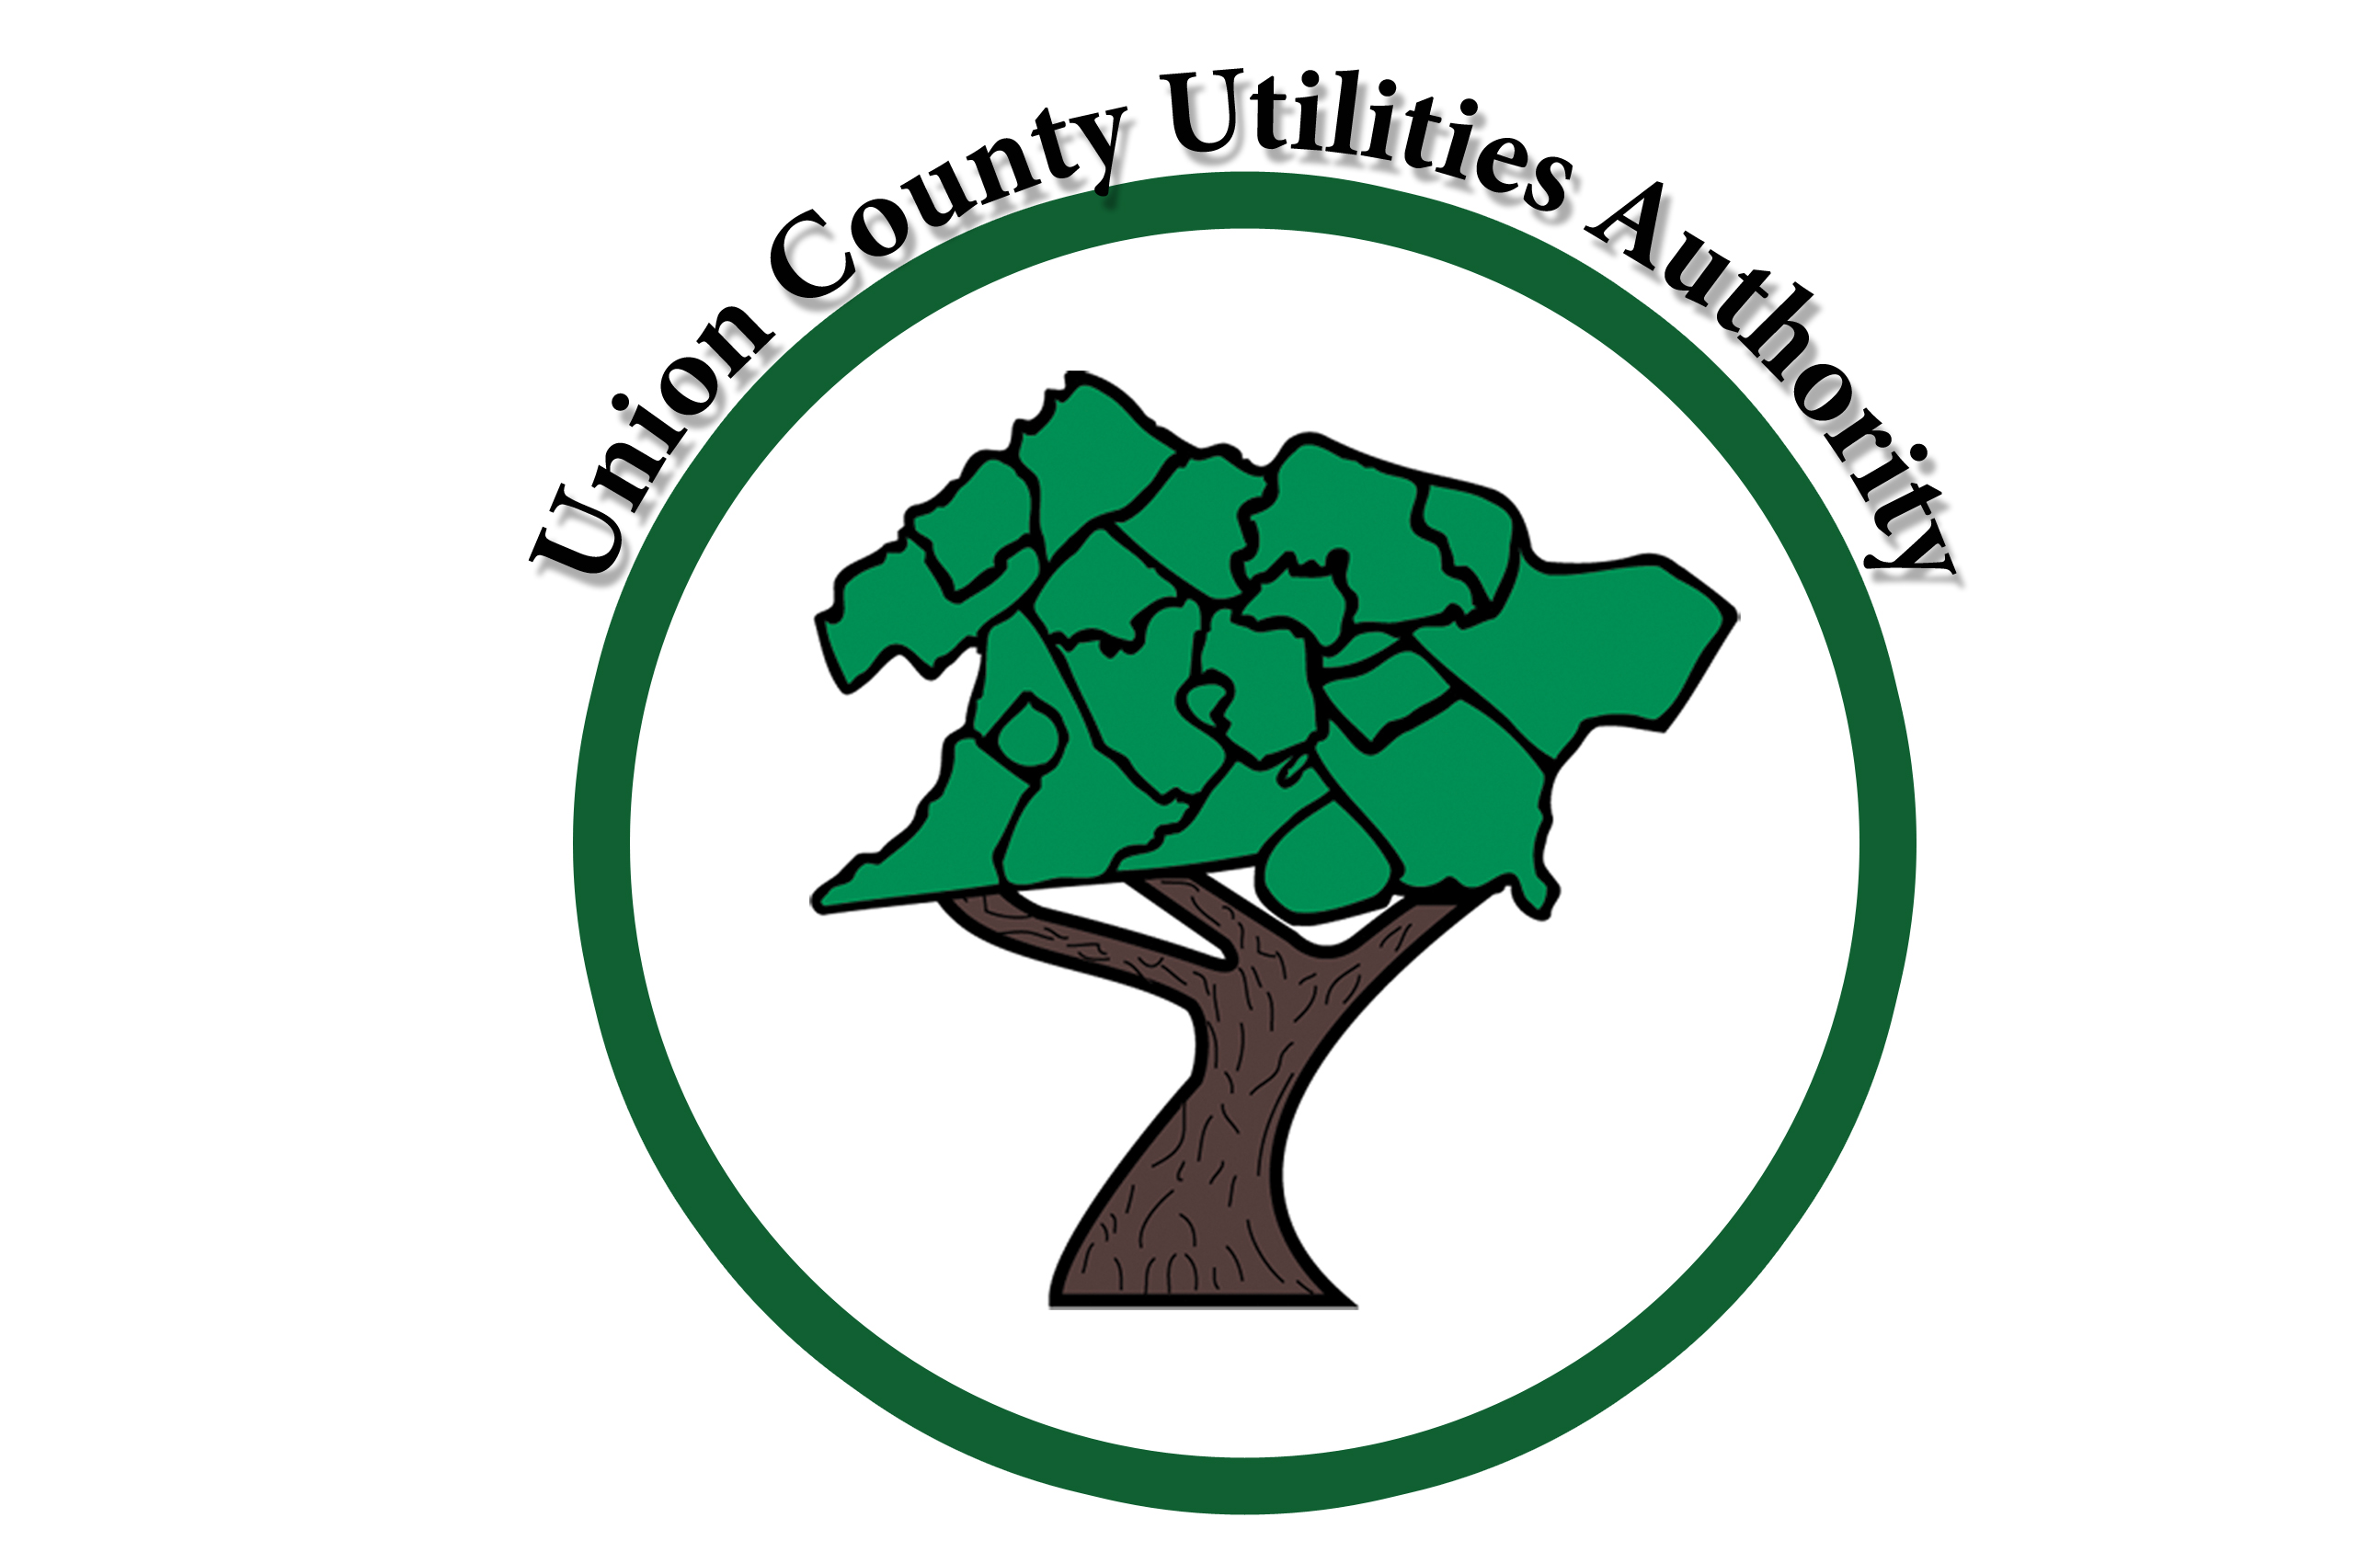 Union County Utilities Authority